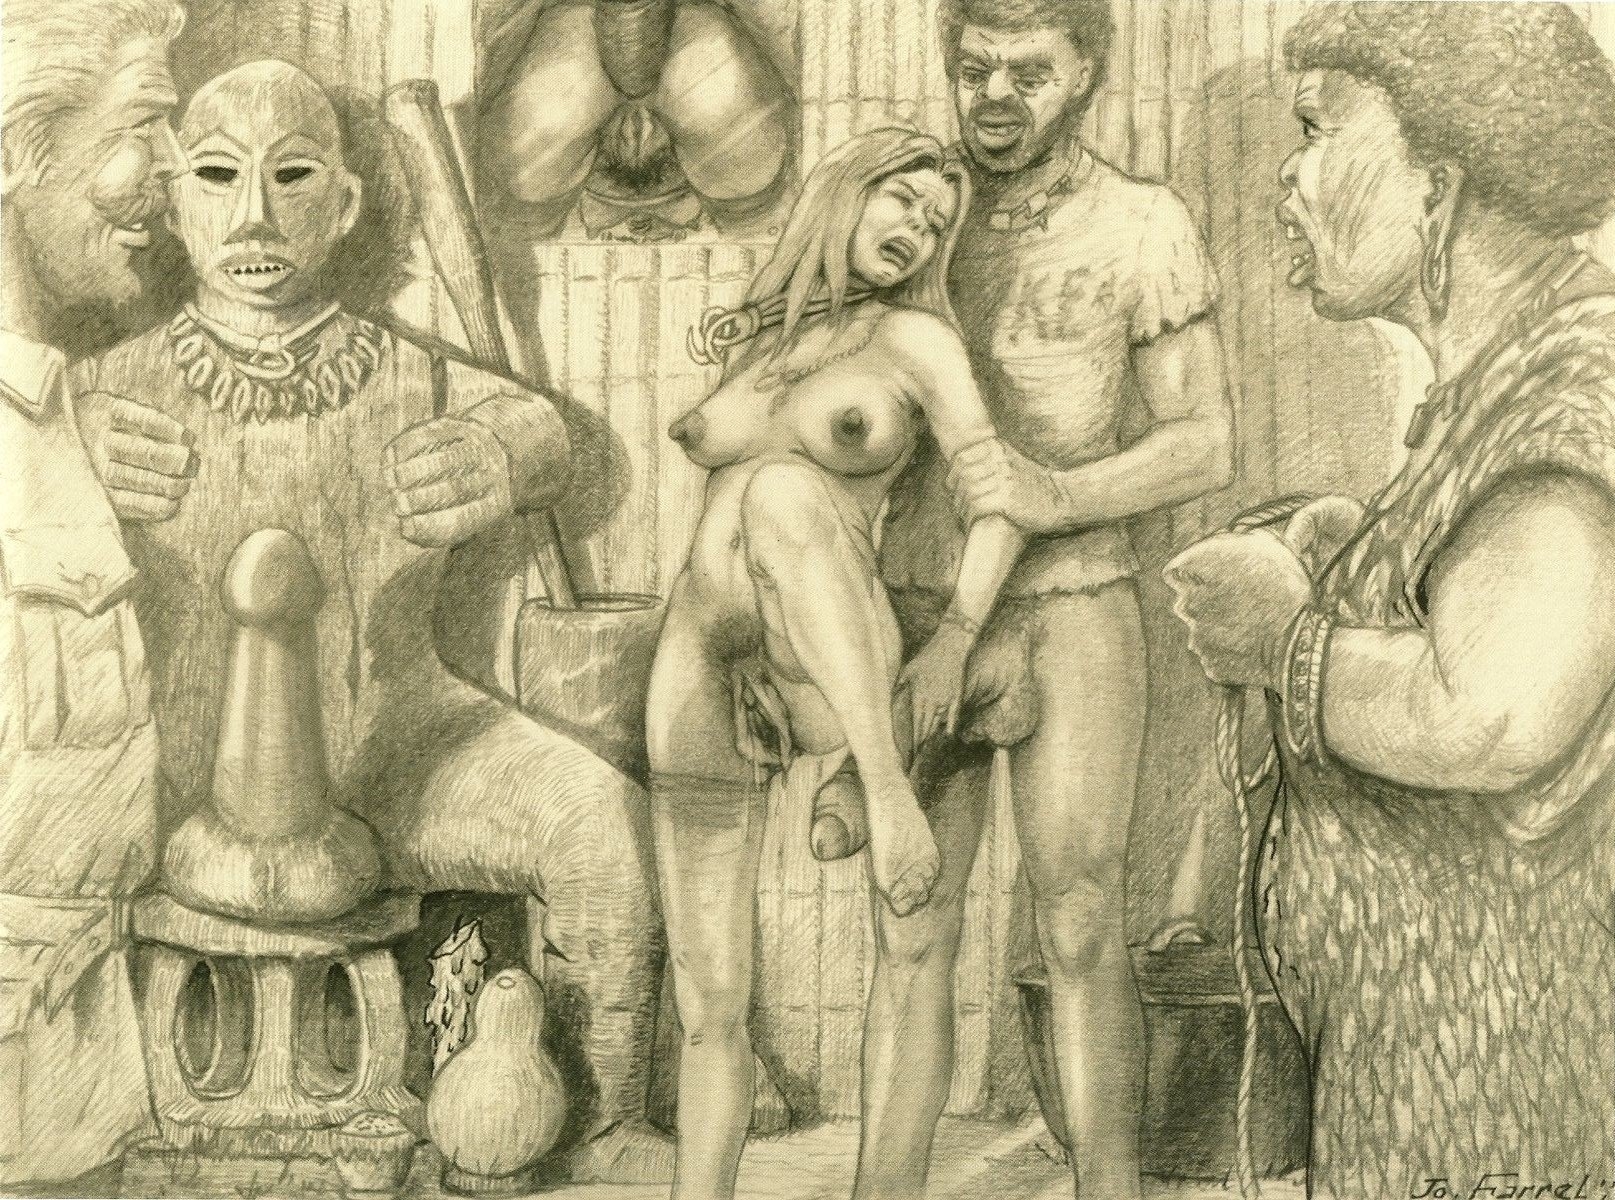 Арт эротика арабы средневековье (59 фото) - порно фото и картинки intim-top.ru